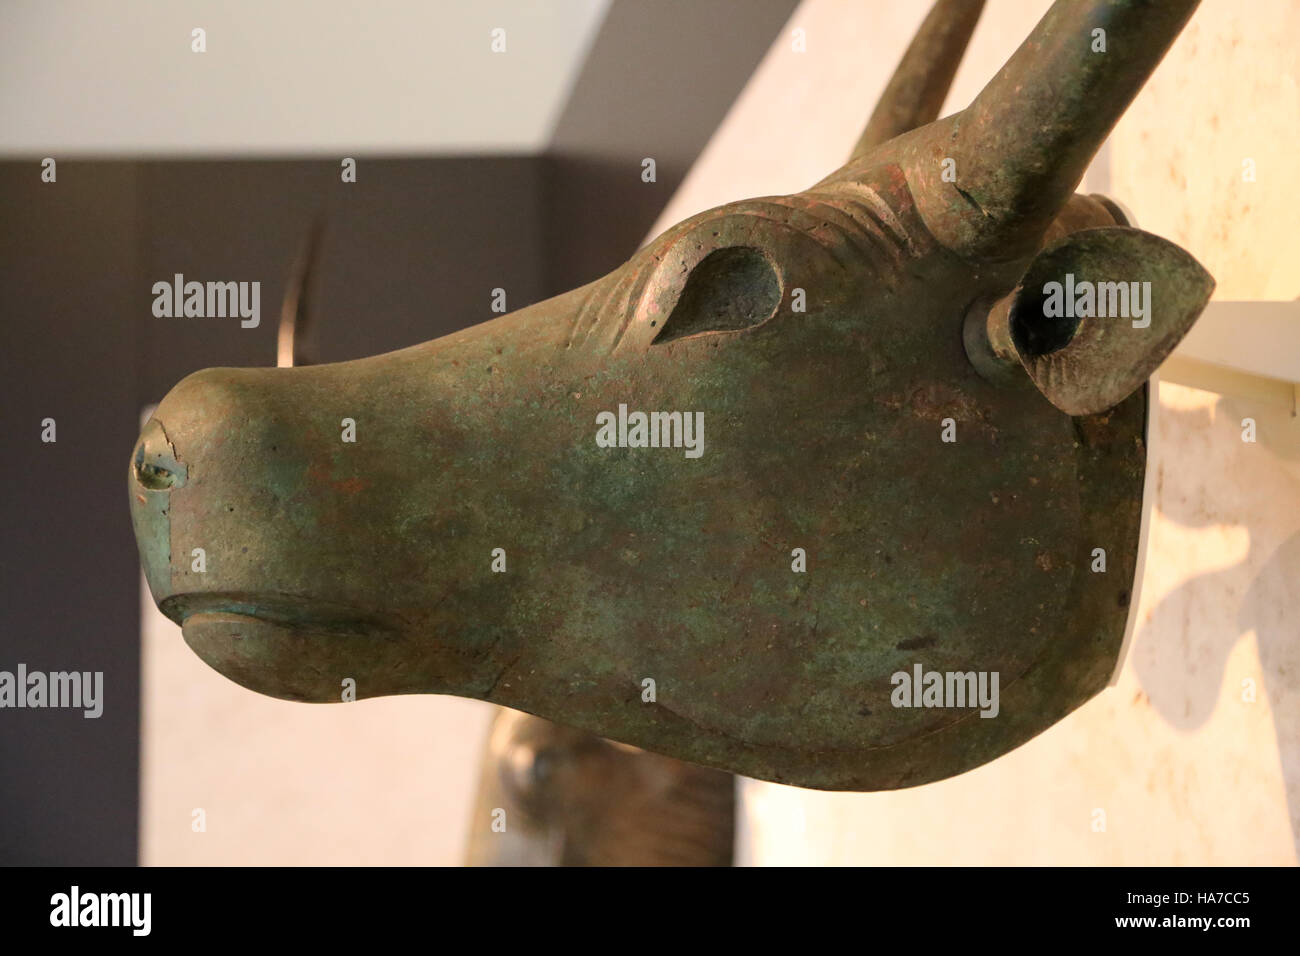 Stiere von Costitx. 500 V. CHR. - 200 BC. Eisenzeit. Material: Bronze. Schrein des Predio de Son Corro, Costitx, Mallorca, Spain.Talaiotic. Stockfoto